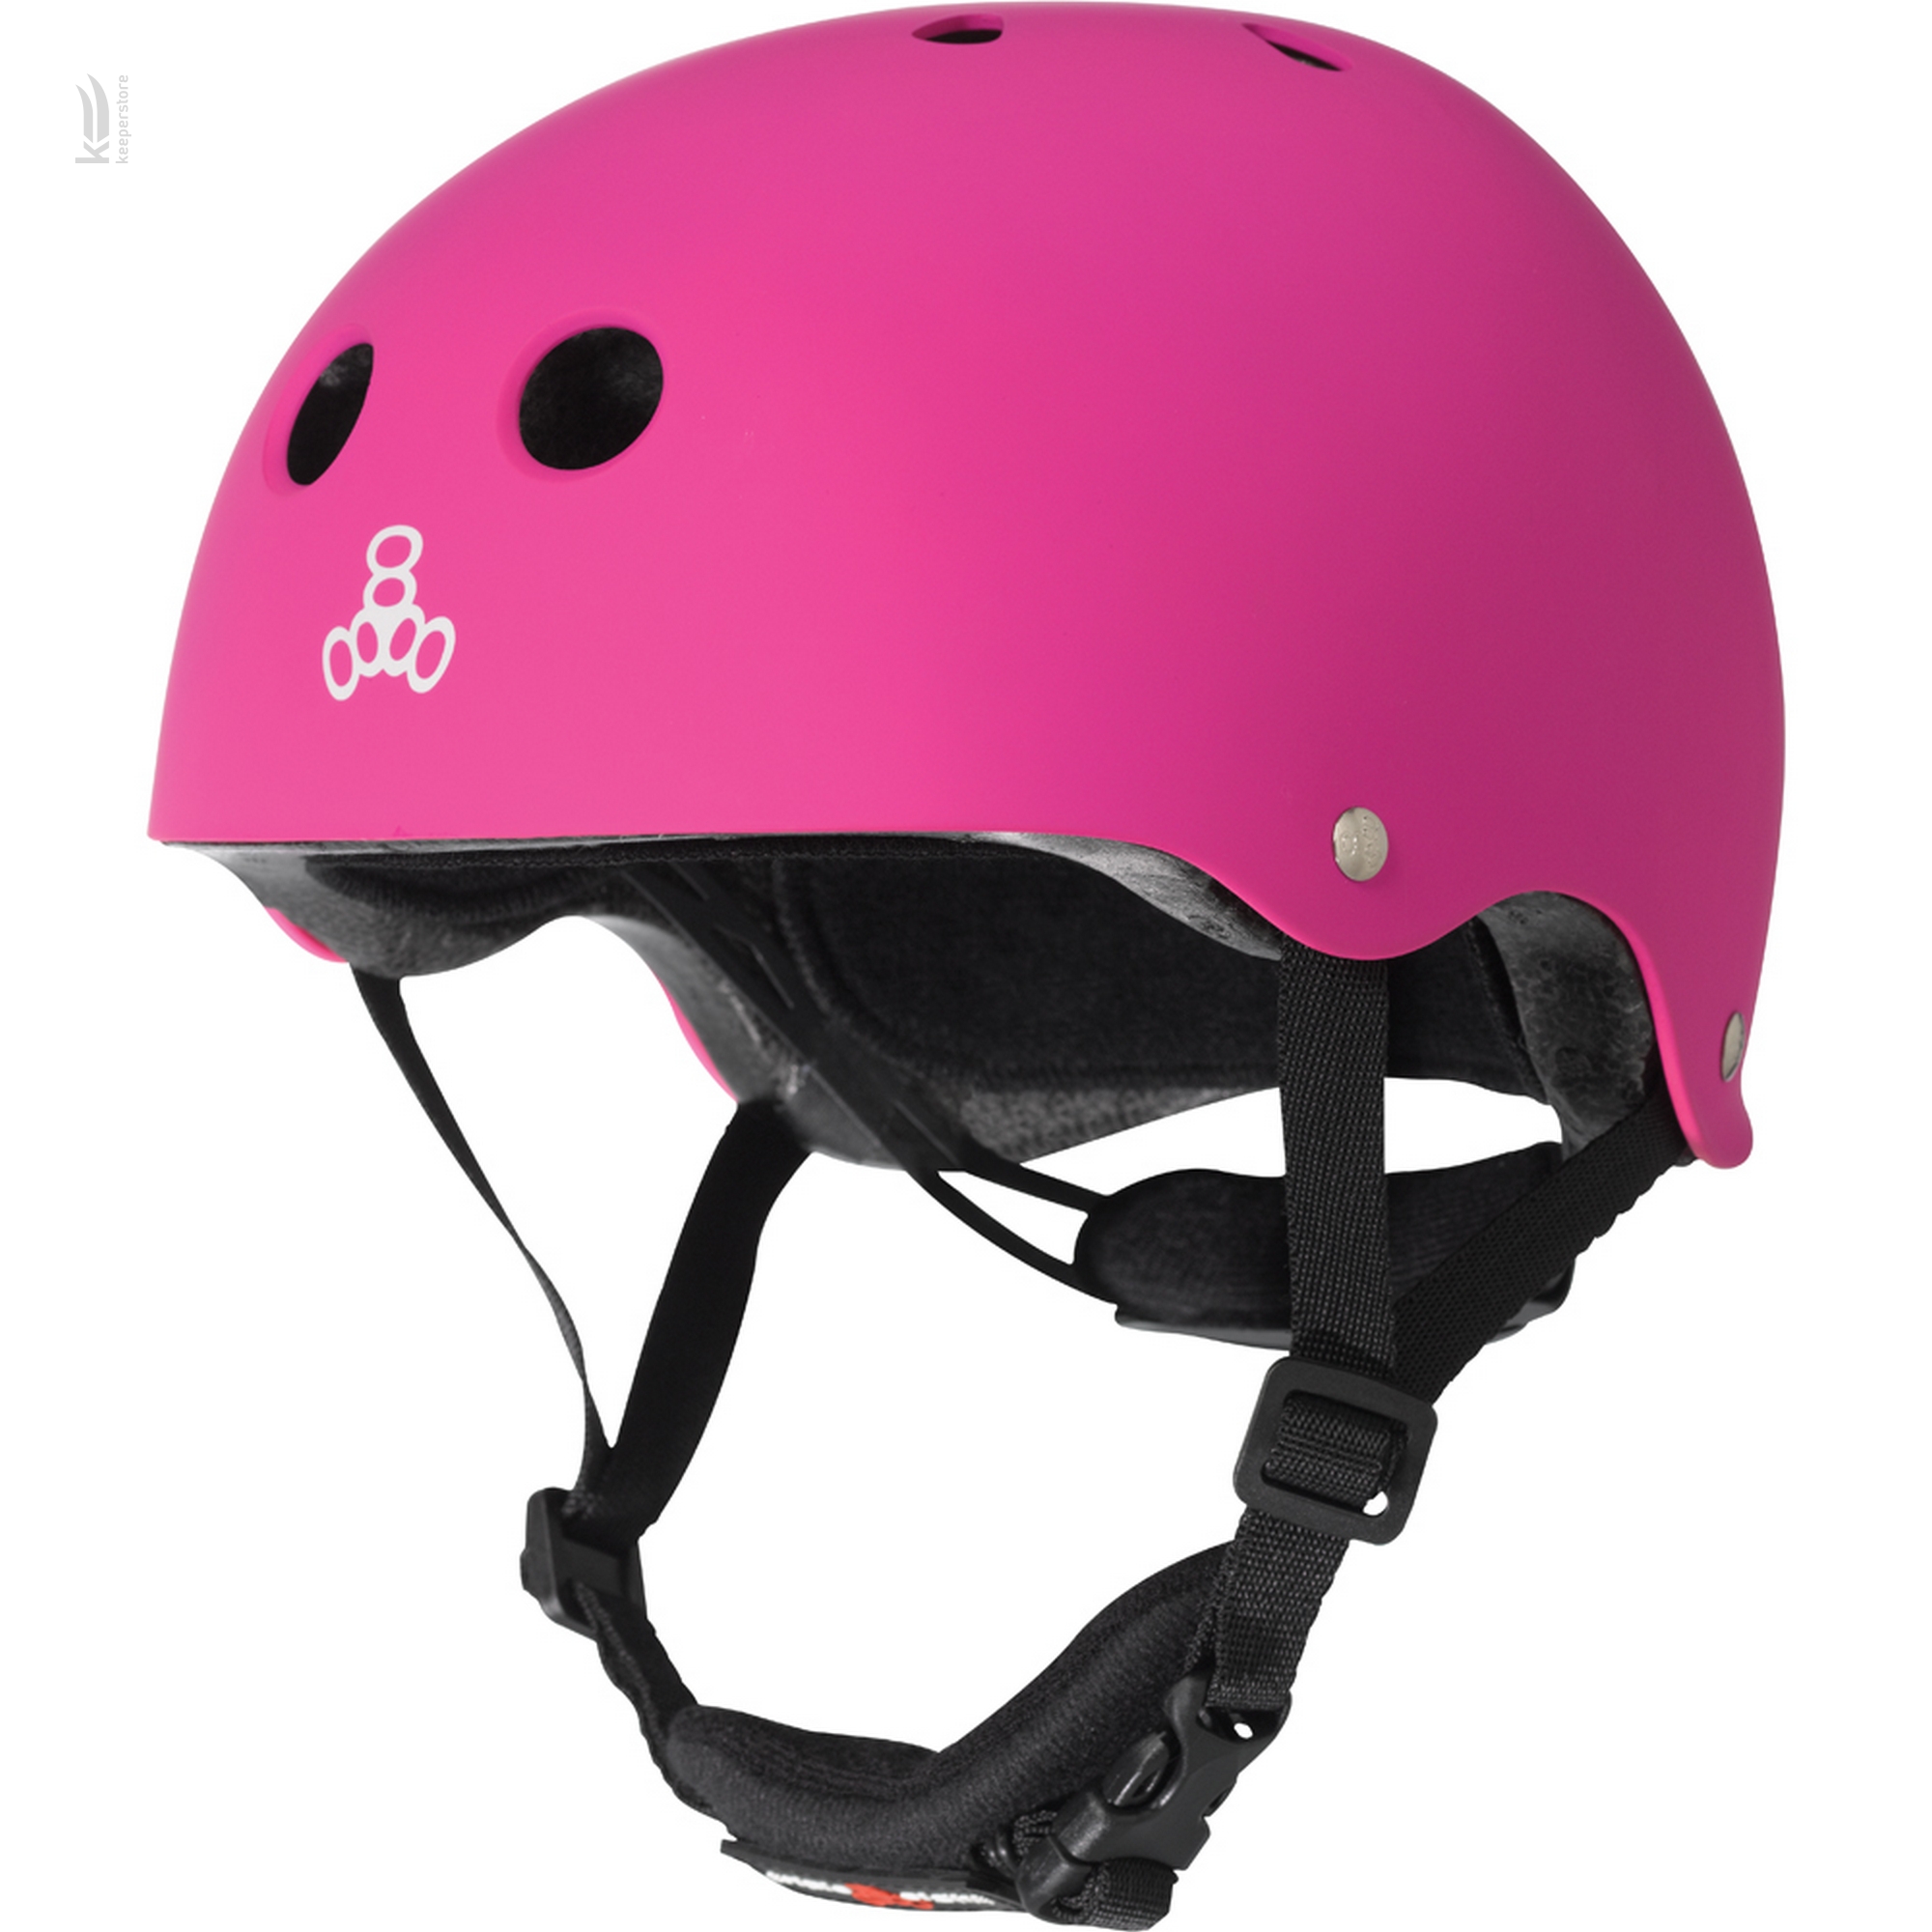 Детский шлем для велосипеда Triple8 Lil 8 Pink